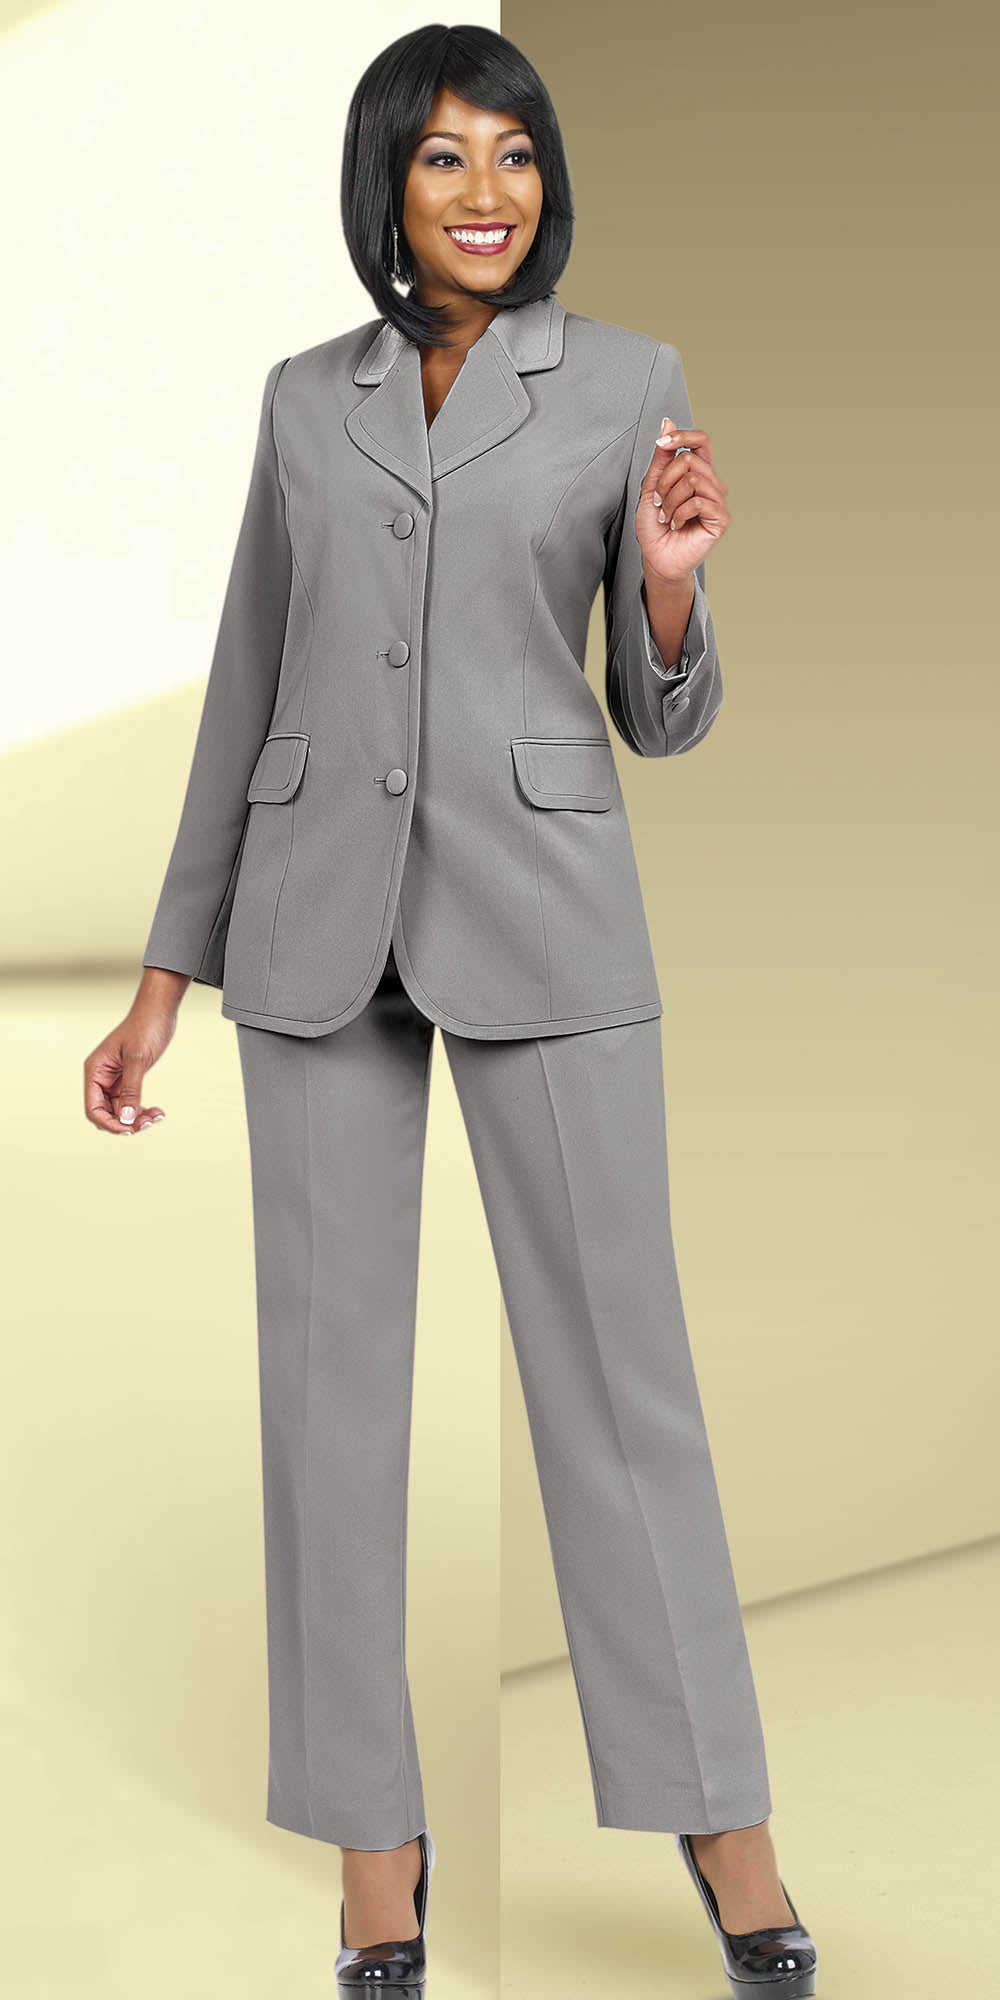 Ben Marc Executive 10495-Silver - Womens Uniform Pant Suit